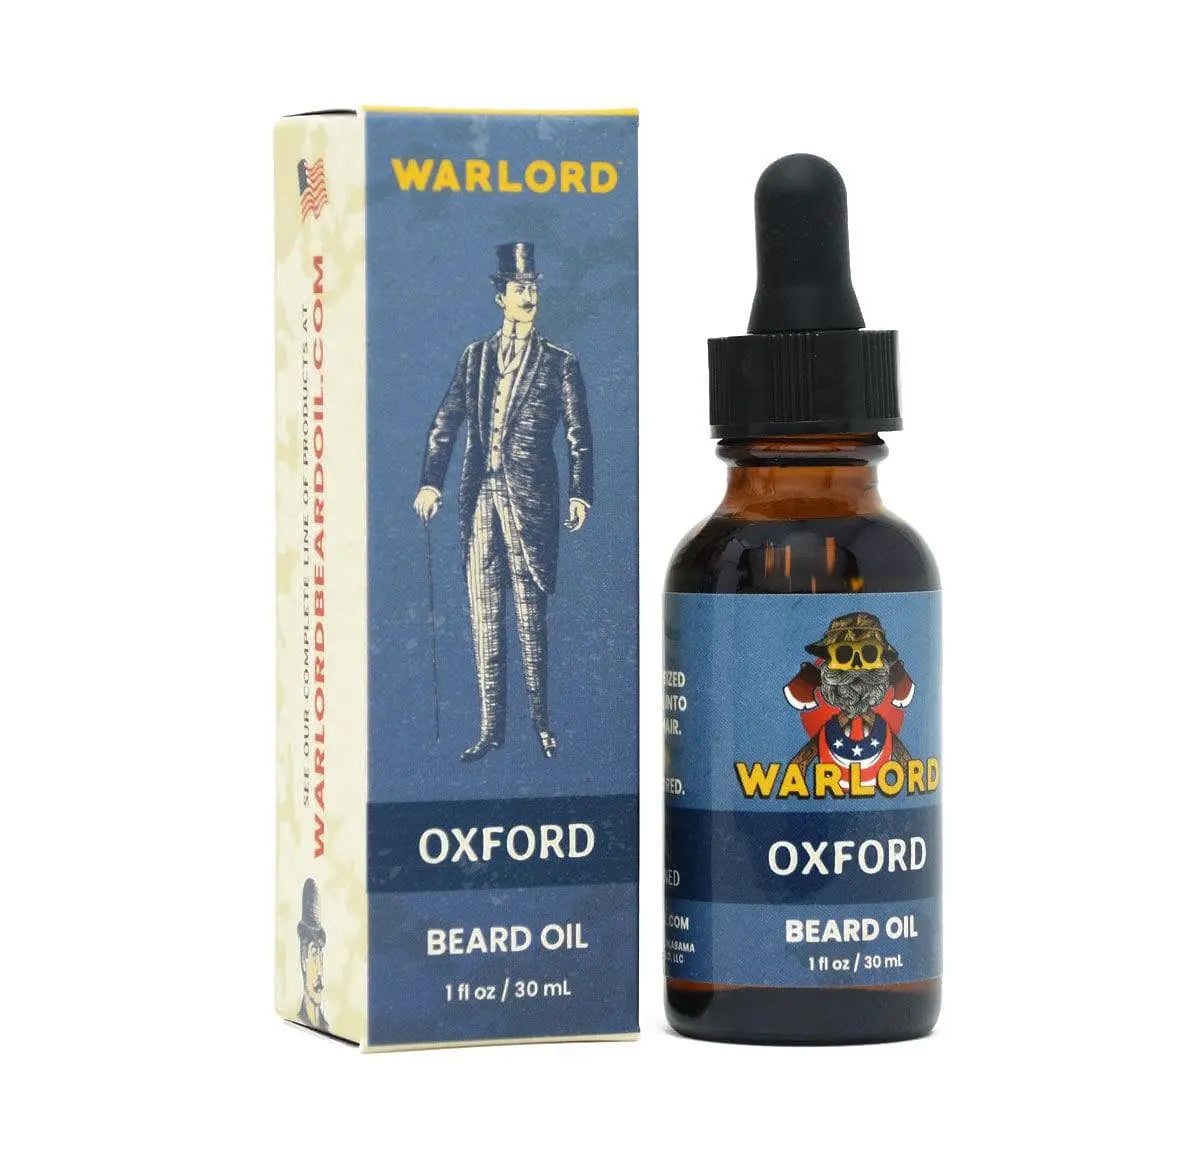 Warlord Oxford Beard Oil|Beard Oil